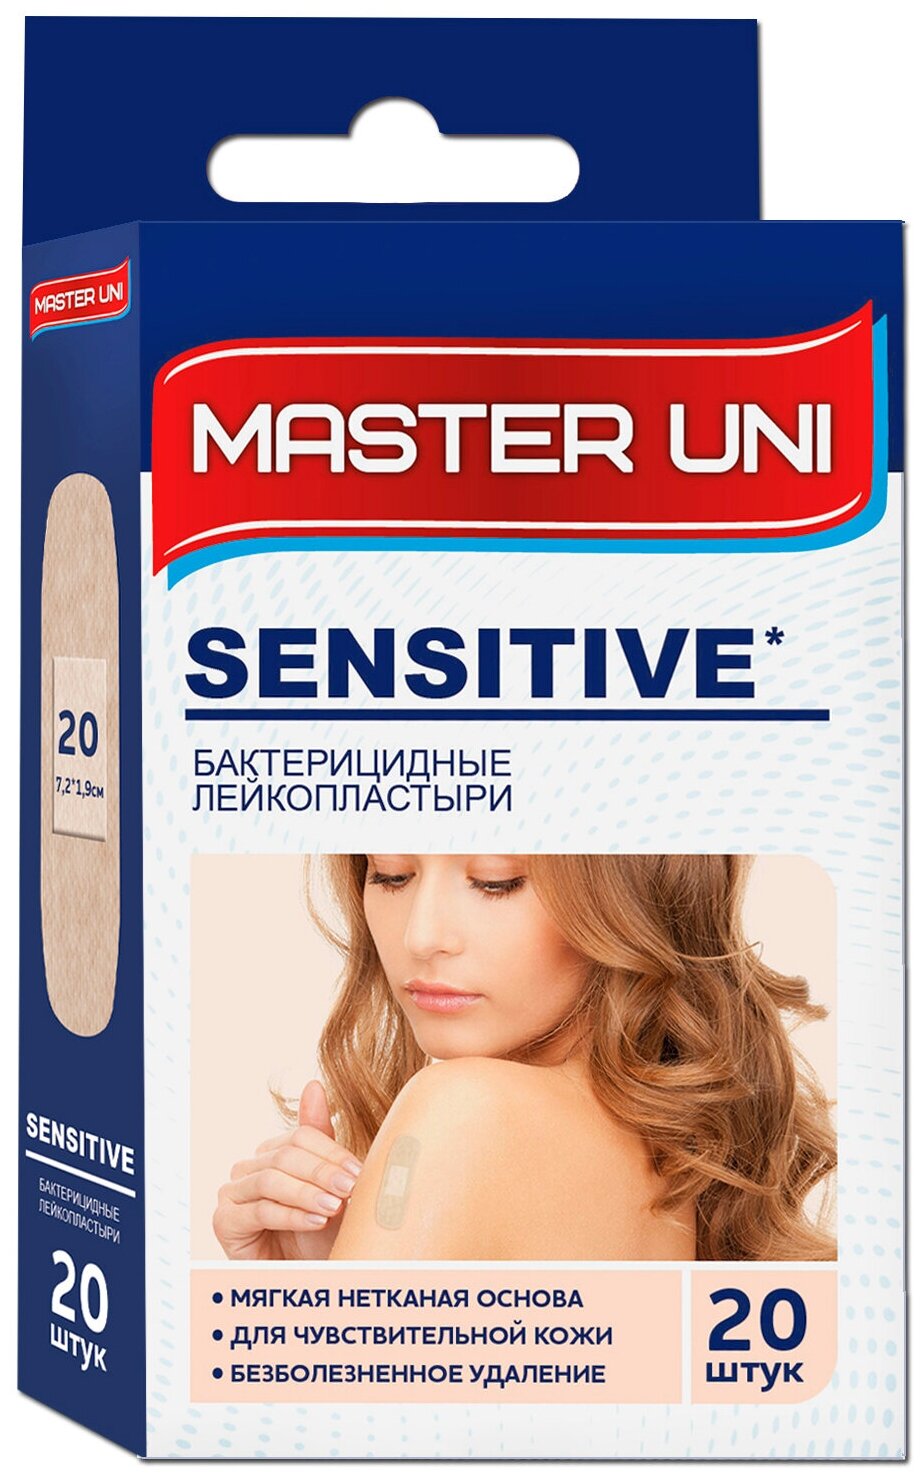 Master Uni Sensitive лейкопластырь бактерицидный на нетканой основе 20 шт.